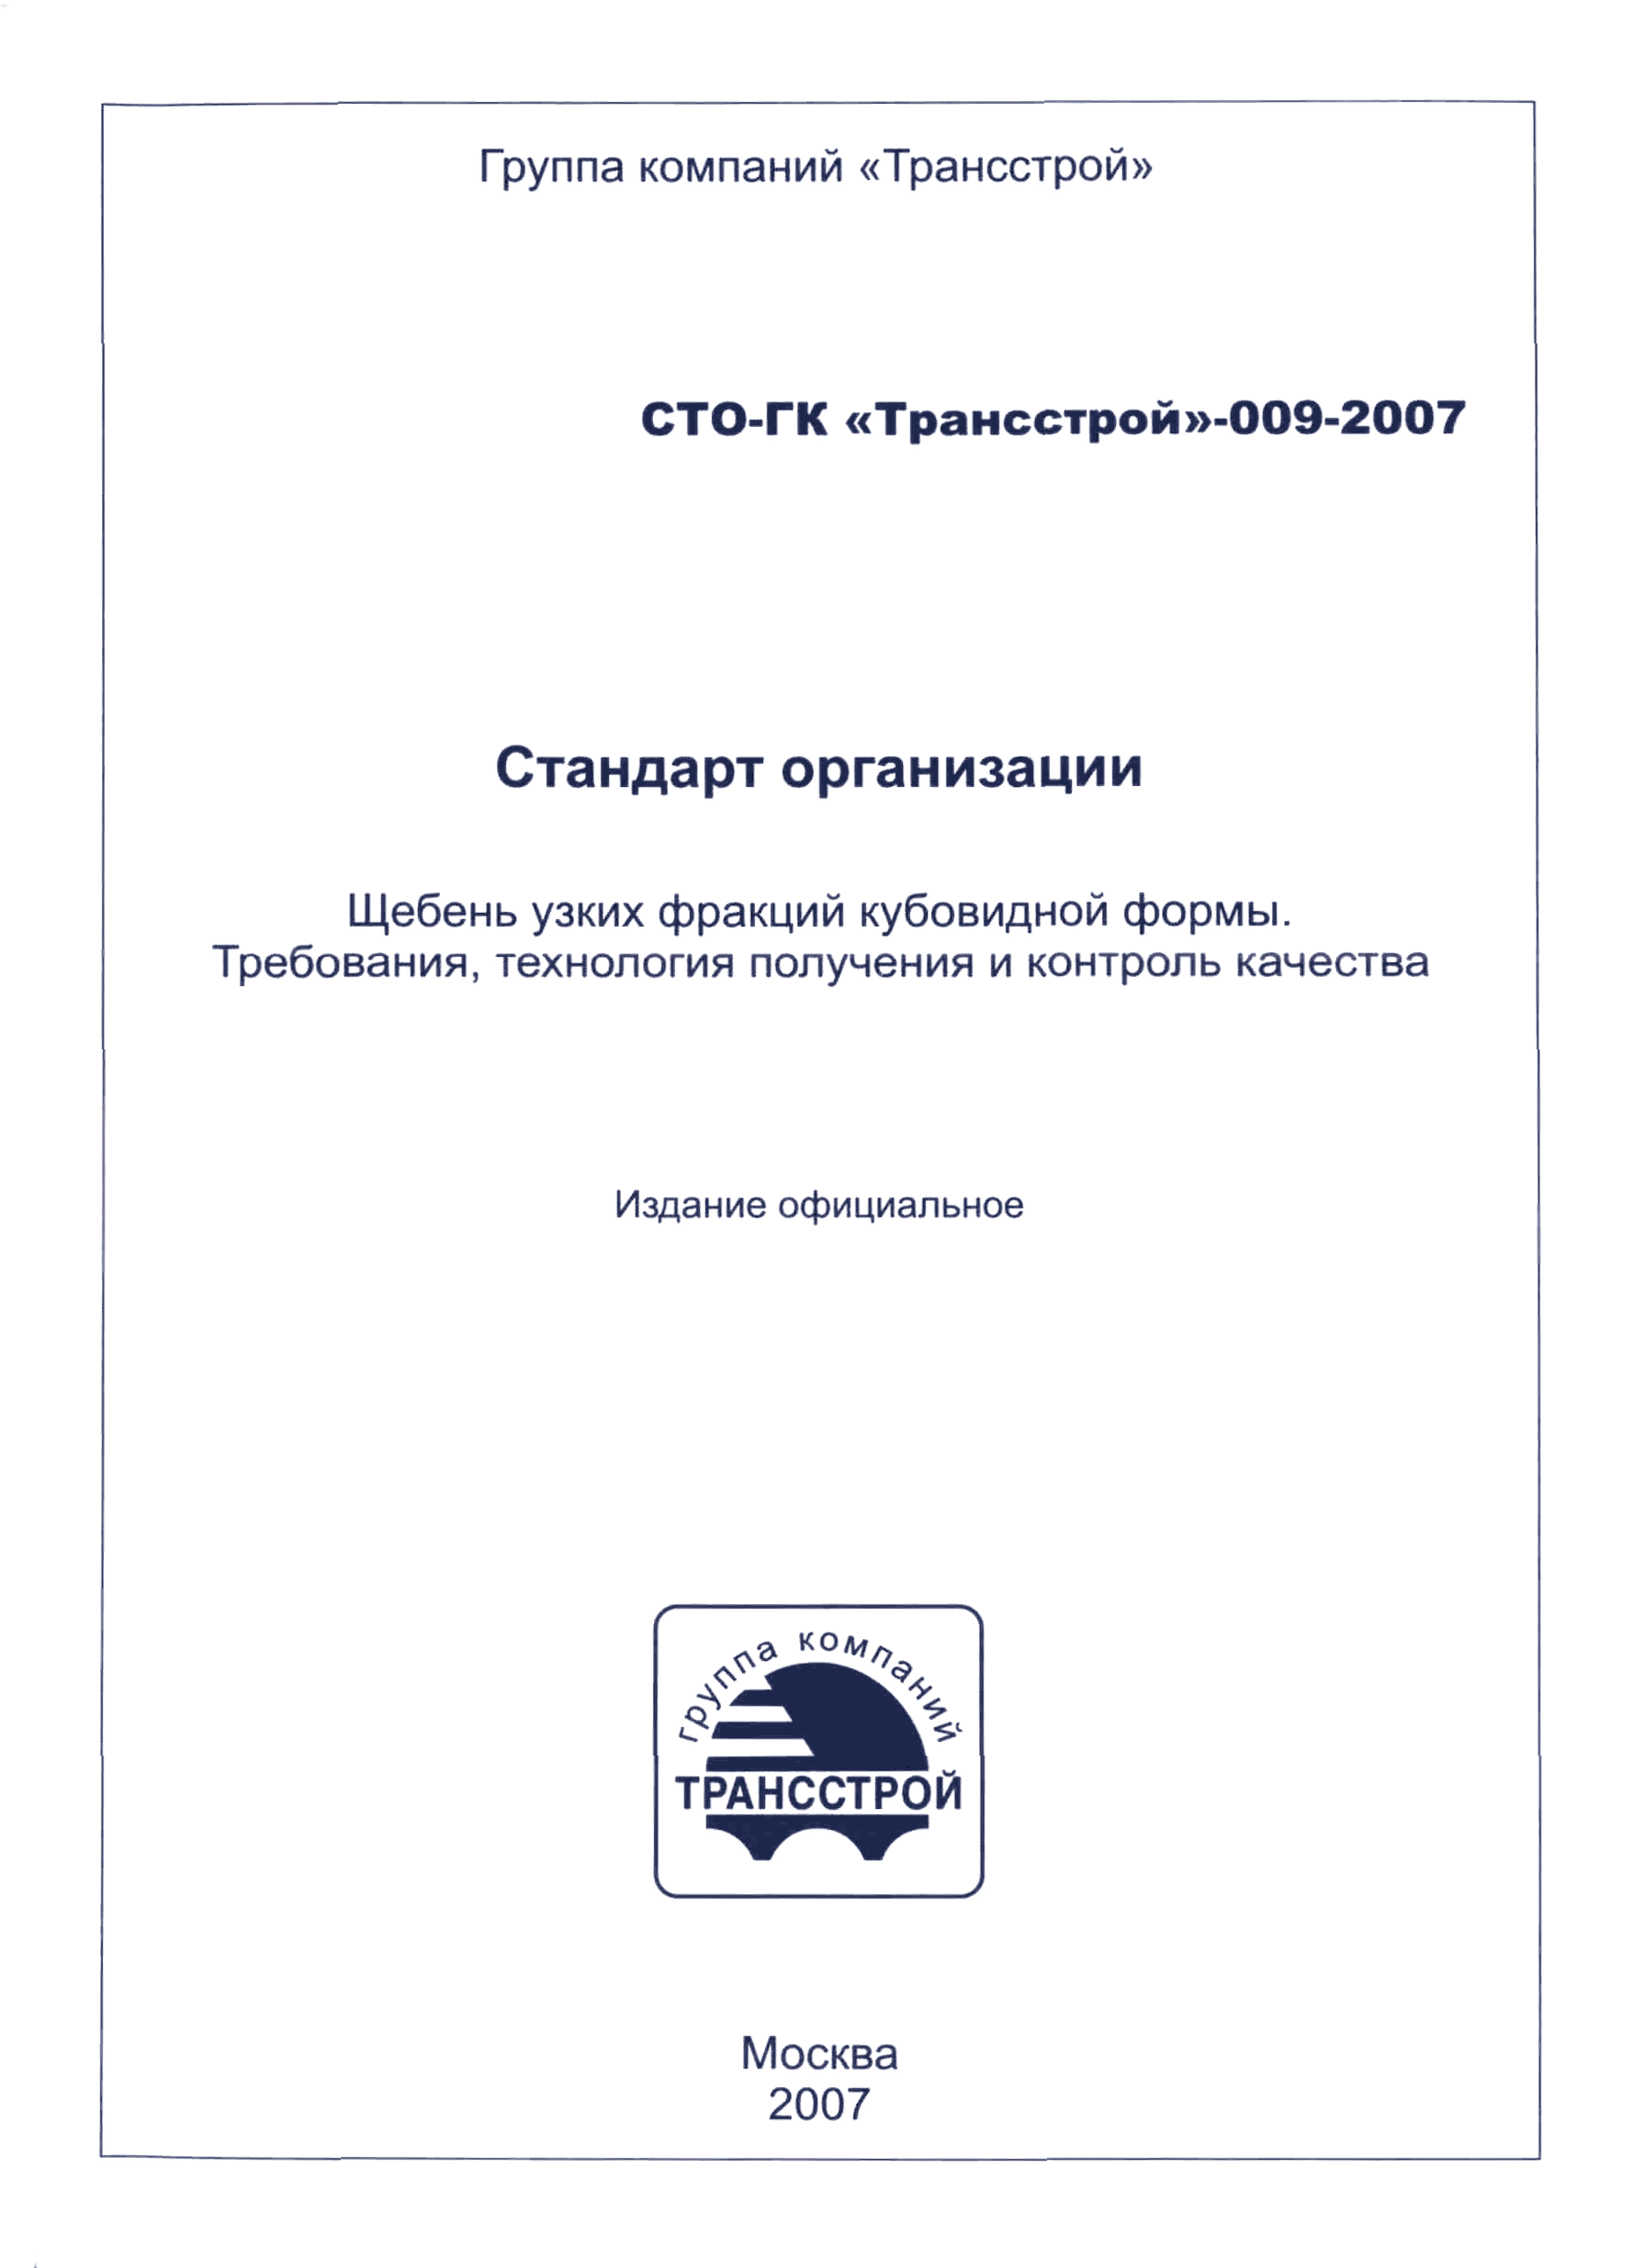 СТО-ГК "Трансстрой" 009-2007